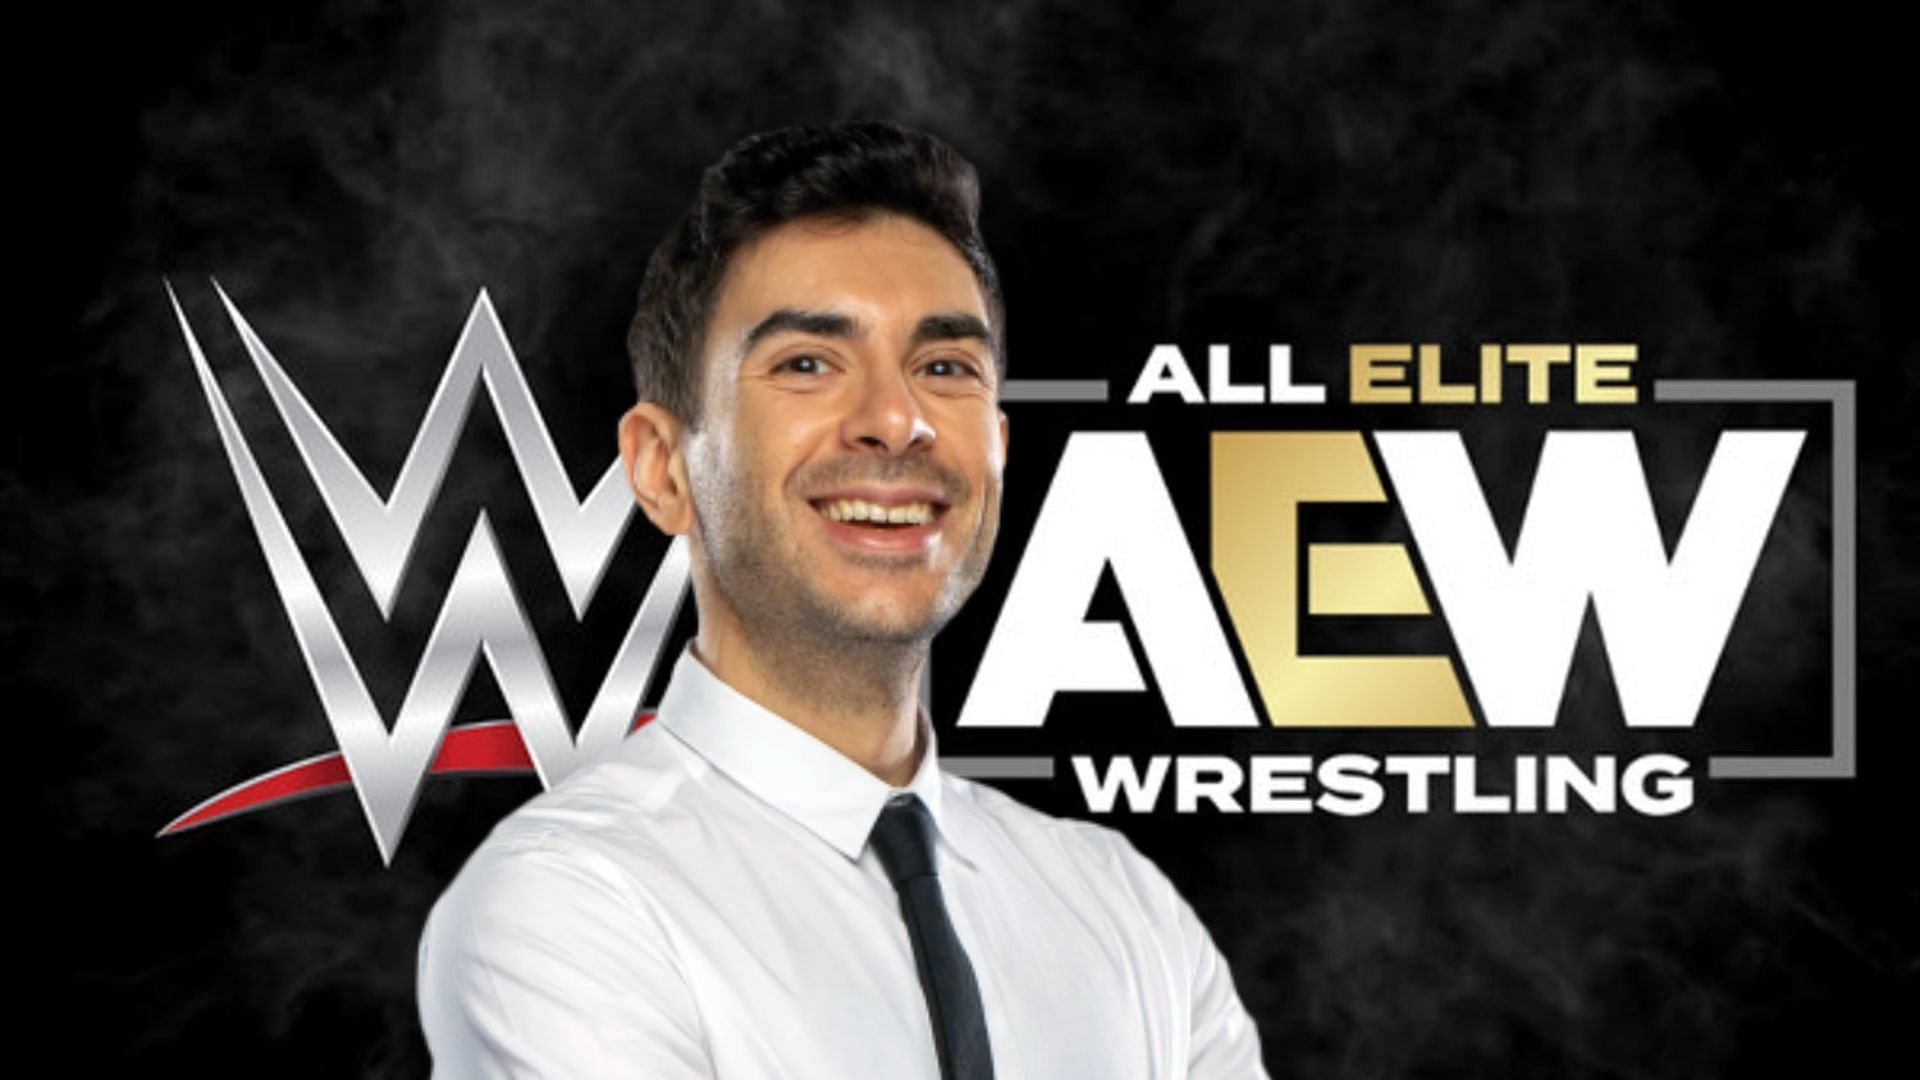 Tony Khan has been bringing new stars to AEW